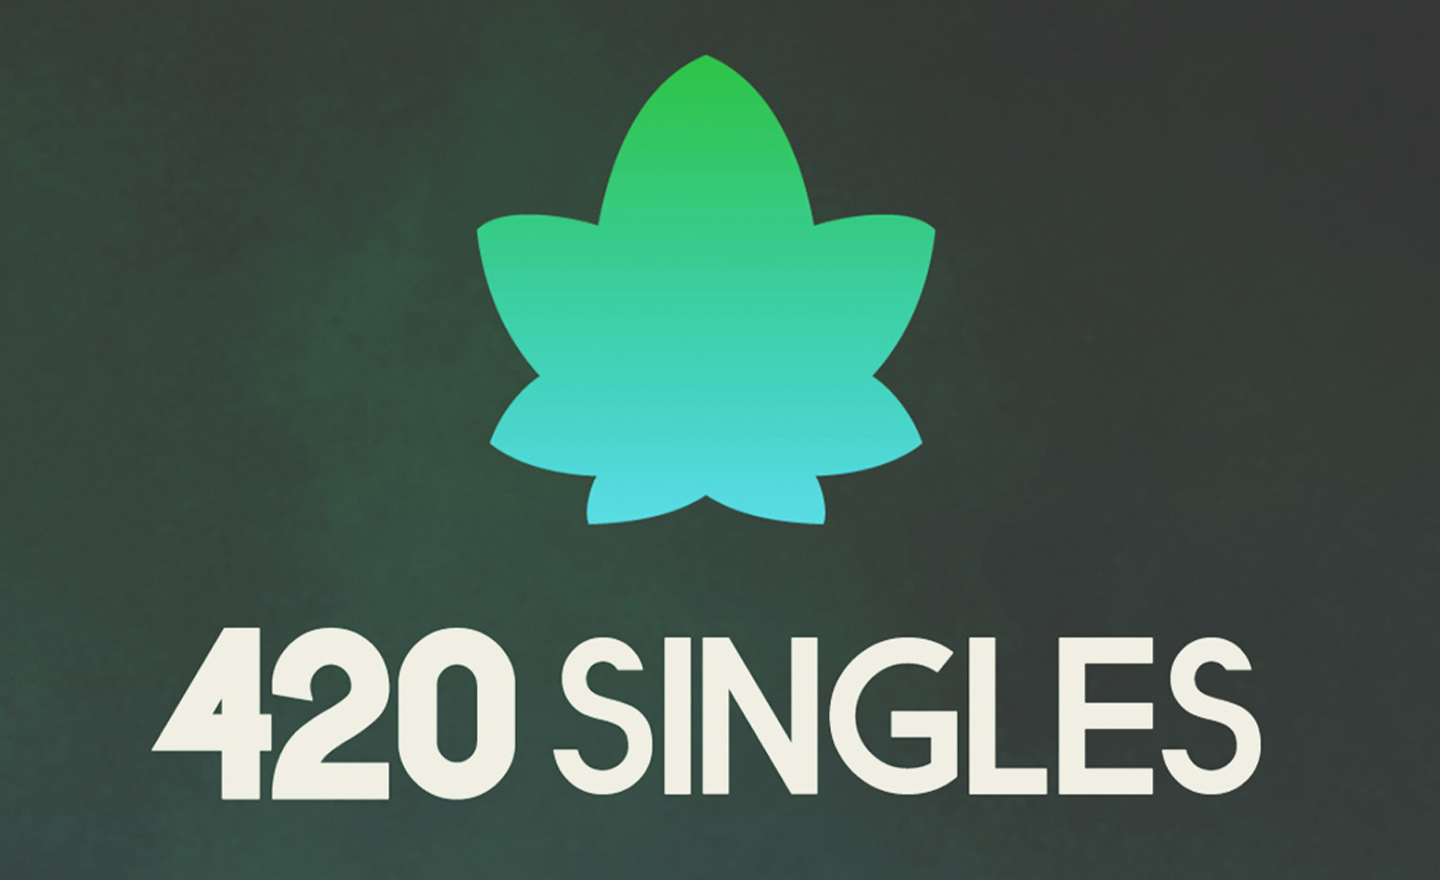 Top 5 Marijuana Dating Apps